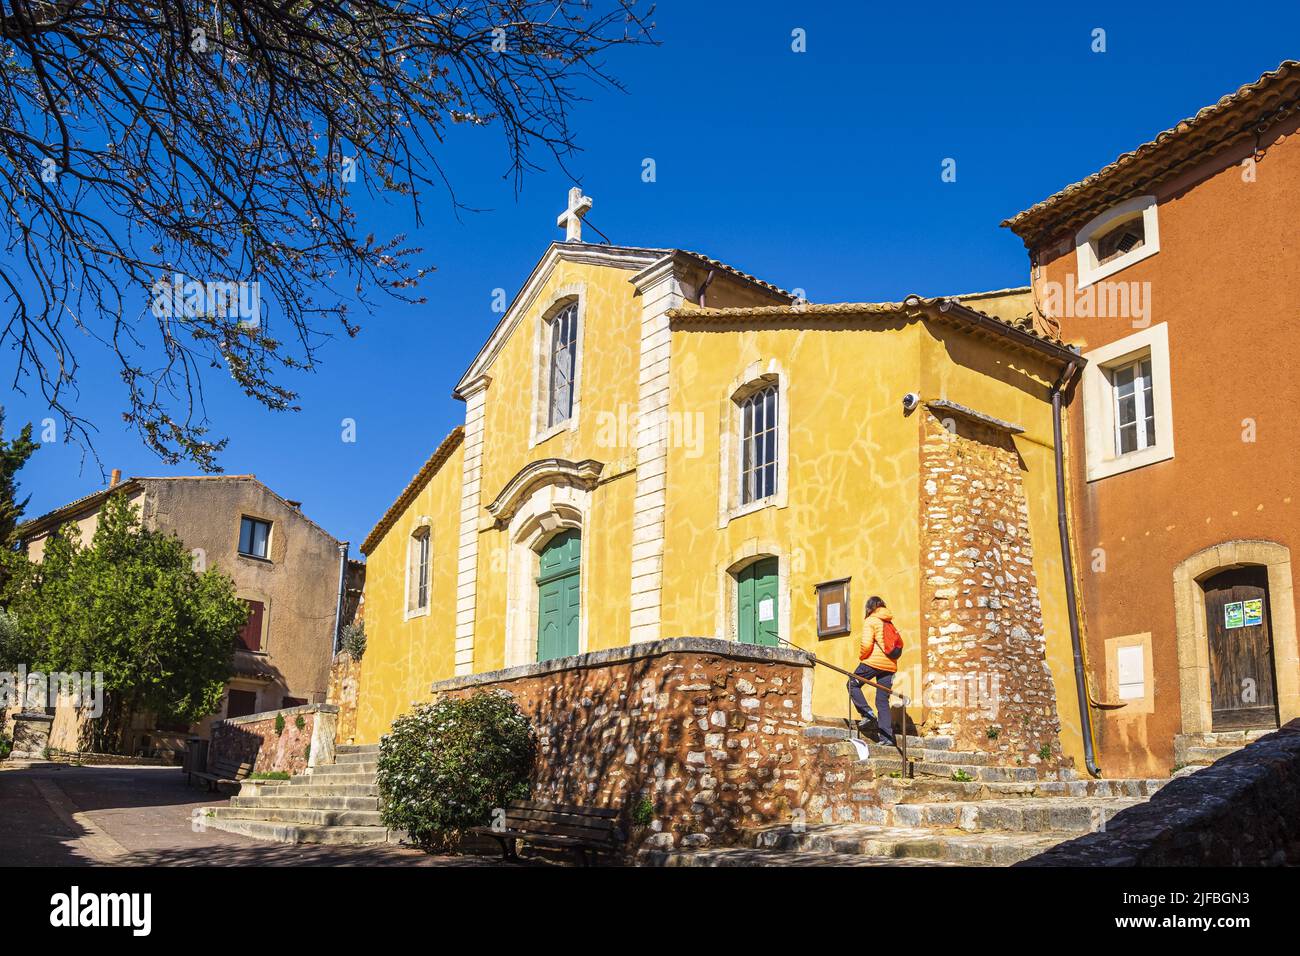 France, Vaucluse, Luberon regional nature park, Roussillon, labelled Les Plus Beaux Villages de France (The Most Beautiful Villages of France), Saint-Michel church Stock Photo